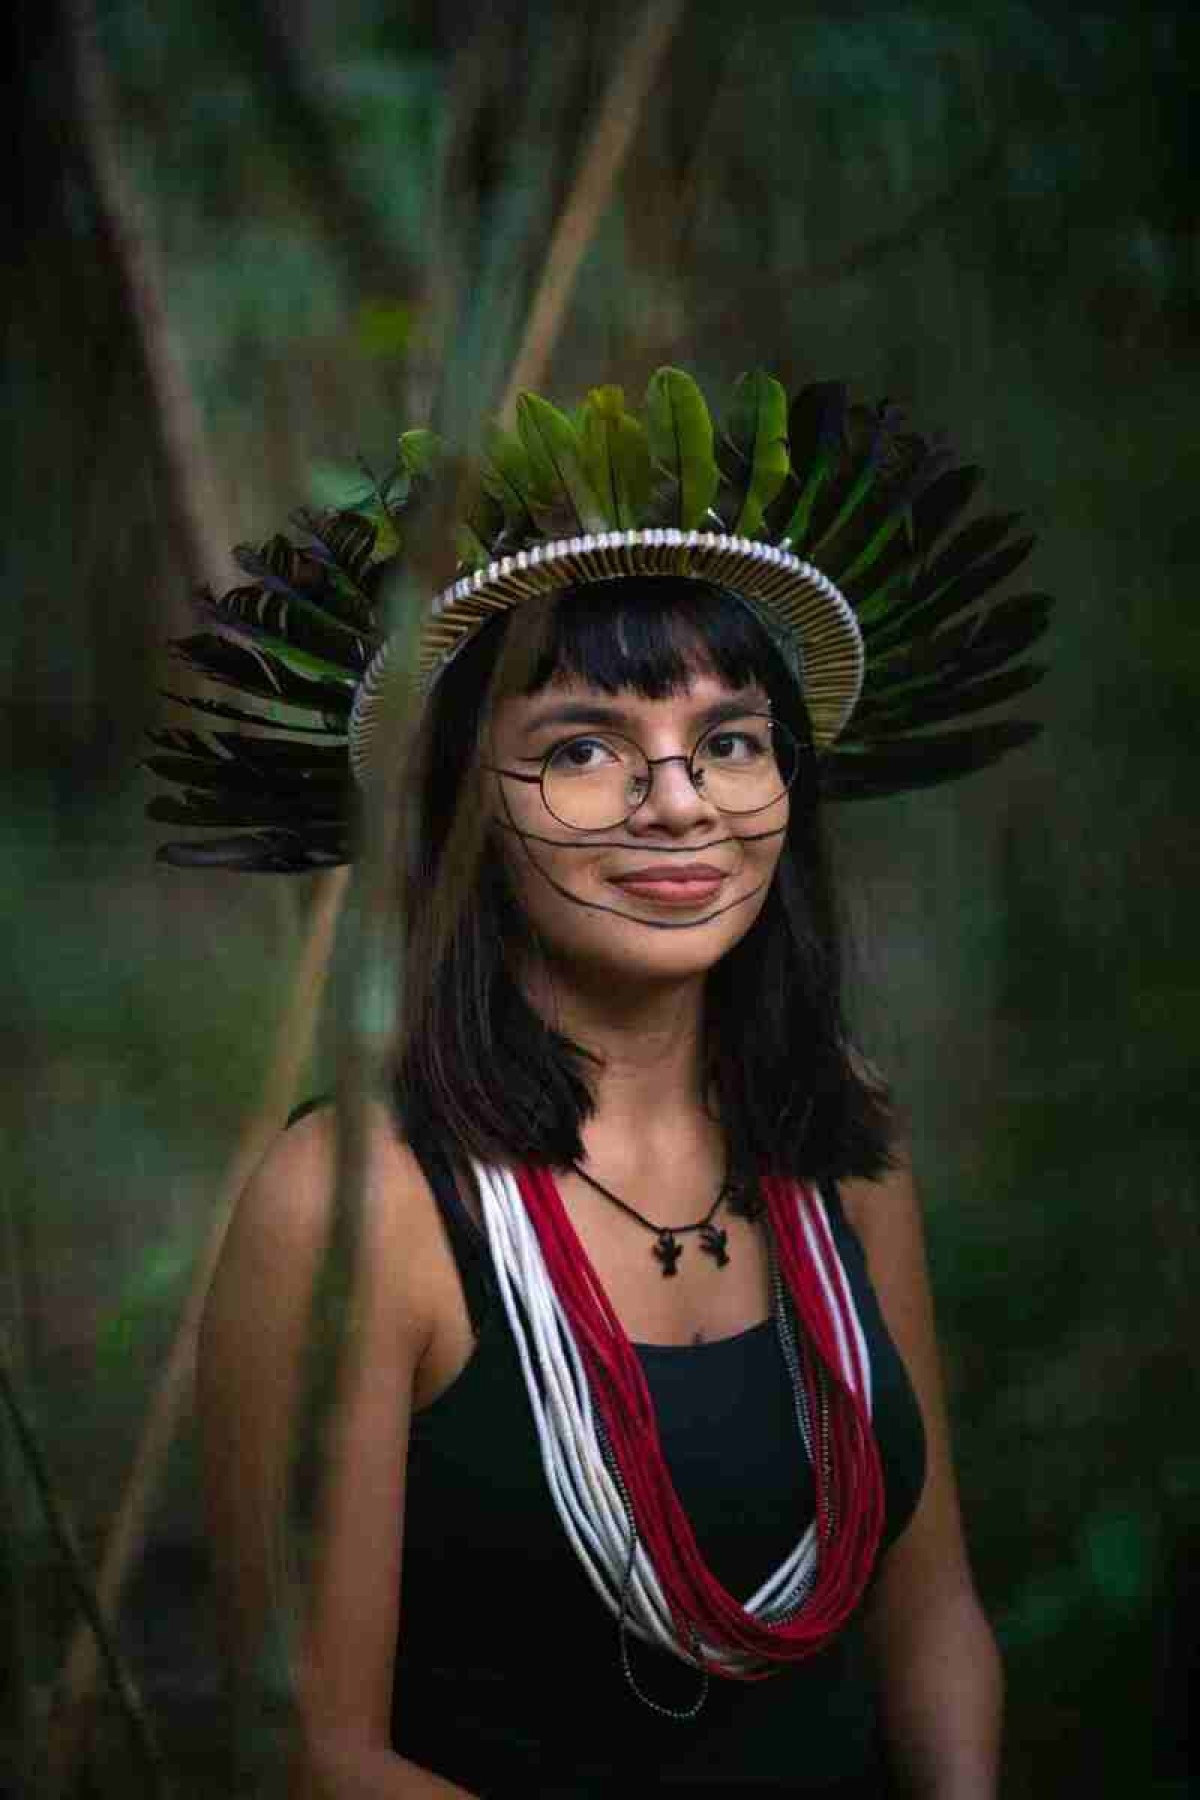 Txai Surui tem 24 anos, é coordenadora do Movimento da Juventude Indígena de Rondônia, representante do World Wide Fund for Nature (WWF), da organização Canindé e do povo Paiper Surui. É membro da delegação do Engajamundo.